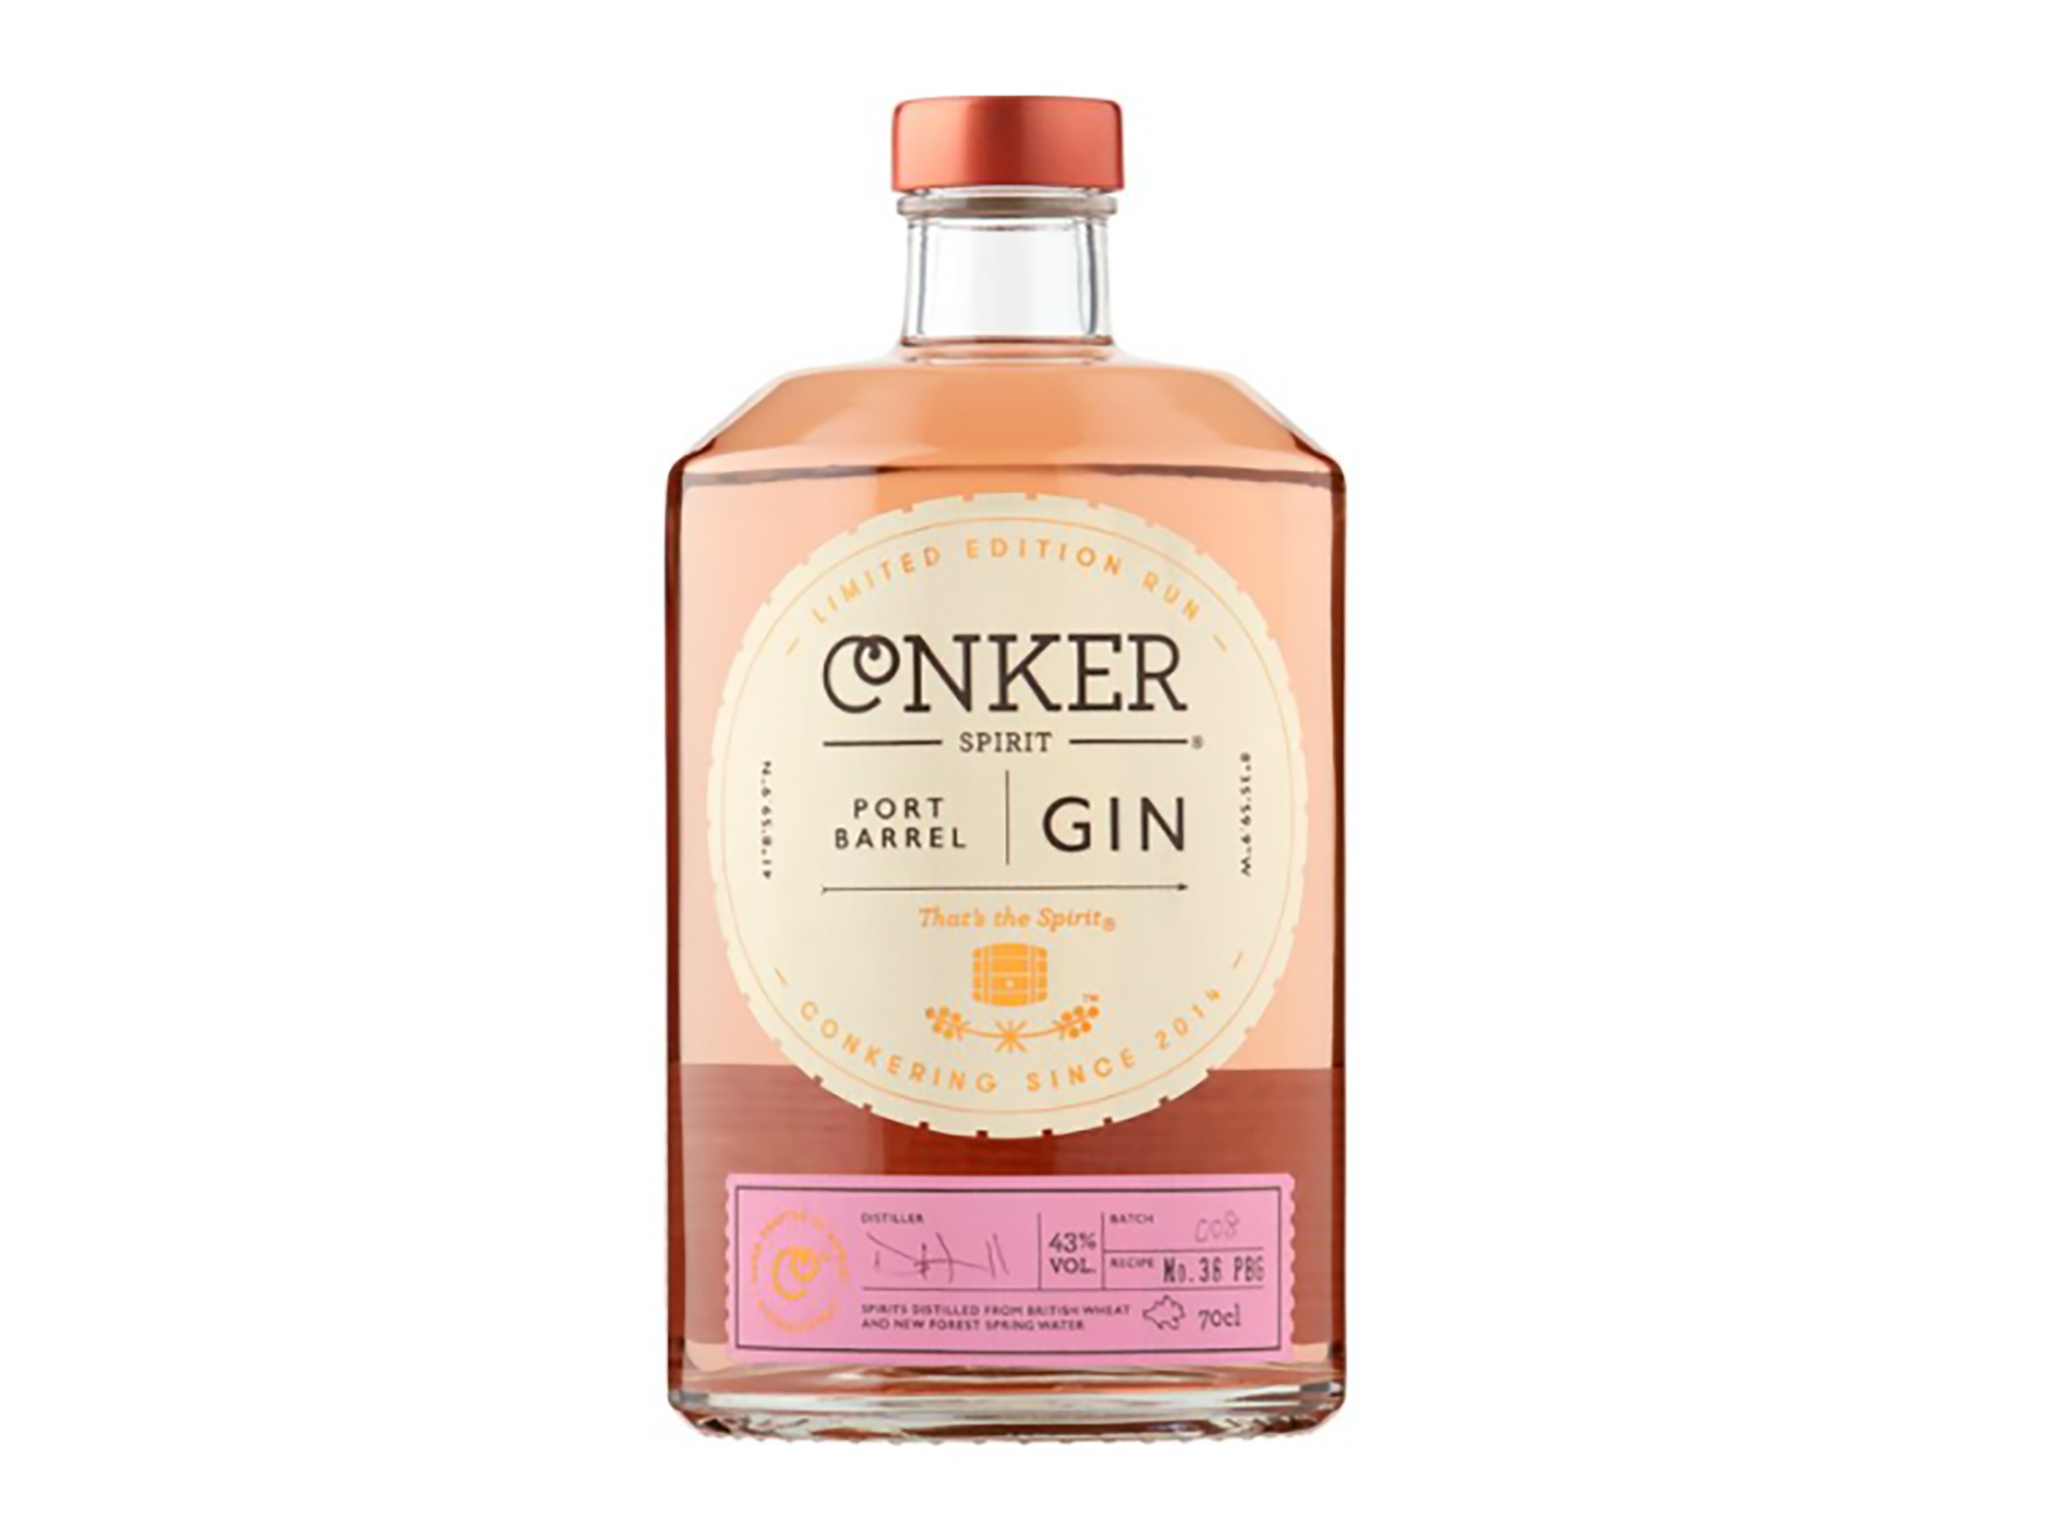 Conker spirit port barrel aged gin, 70cl.png